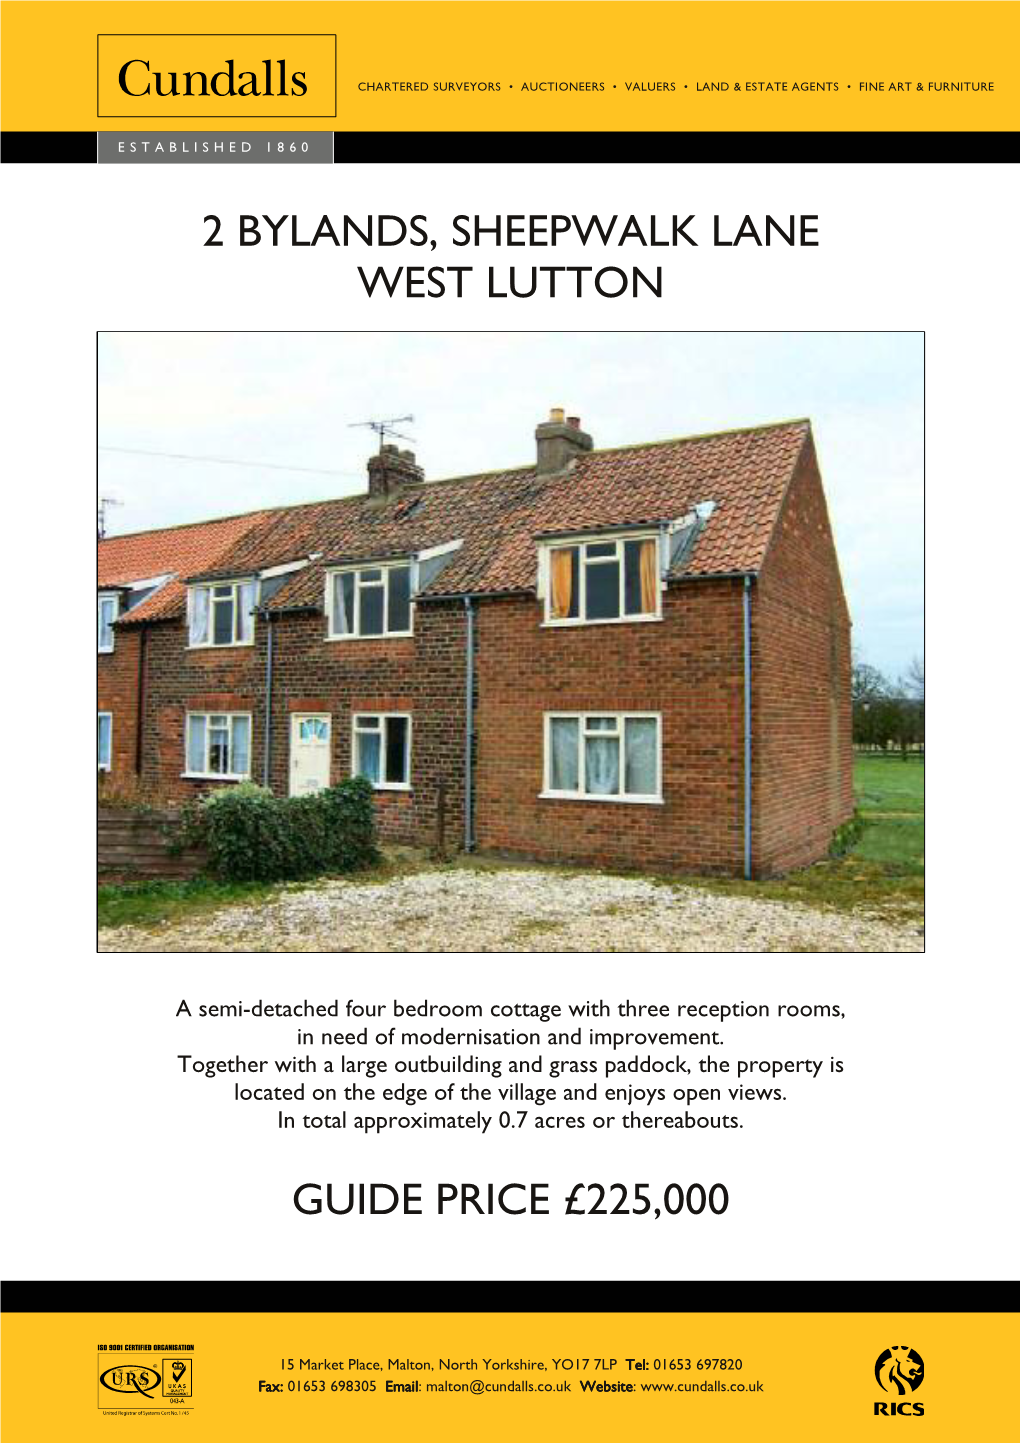 2 Bylands, Sheepwalk Lane West Lutton Guide Price